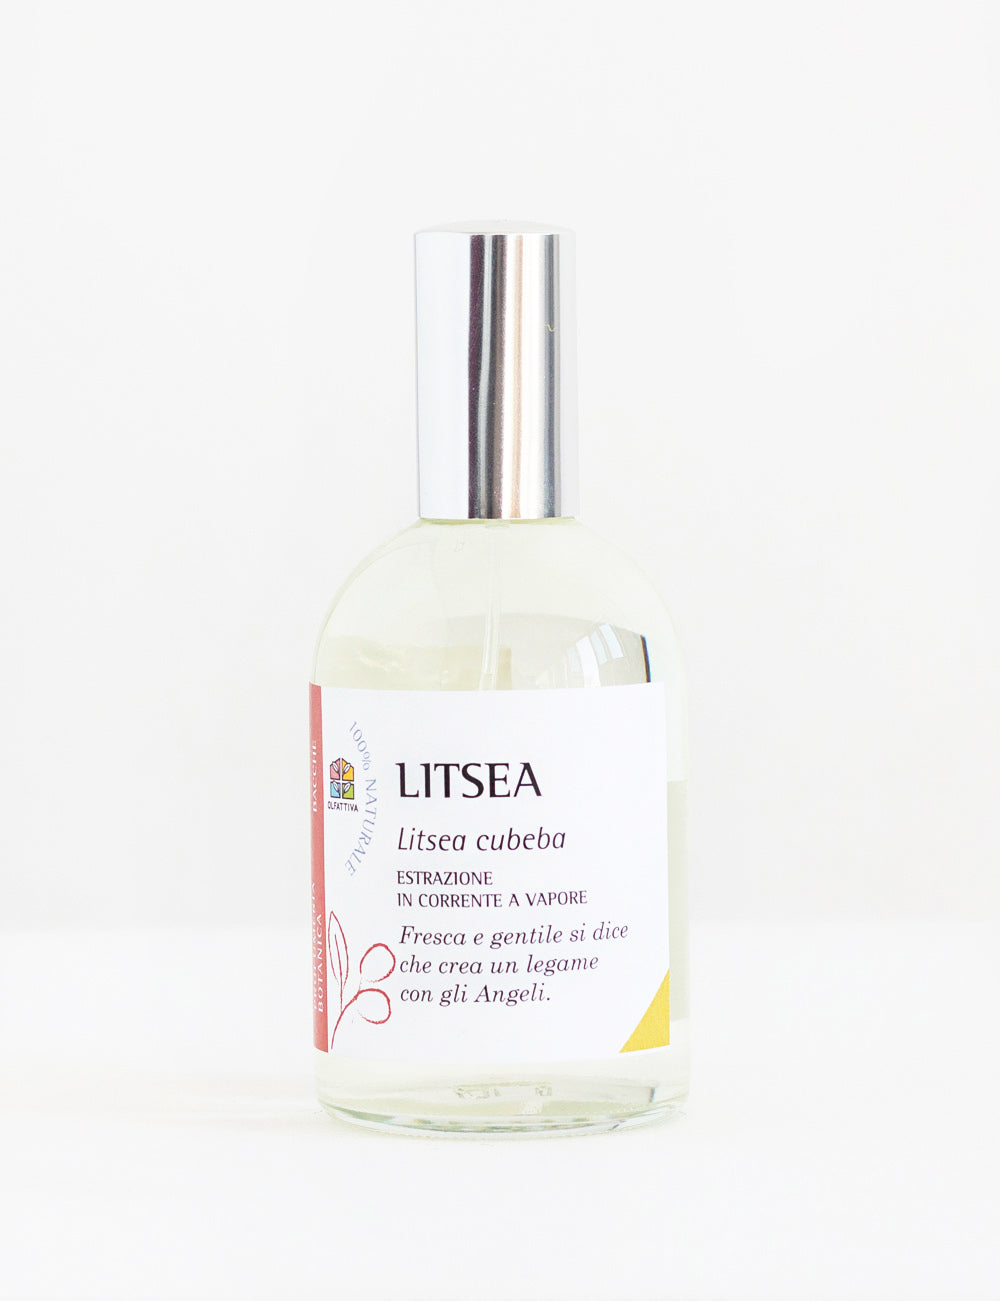 Olfactory Perfume Litsea Fresh and Gentle